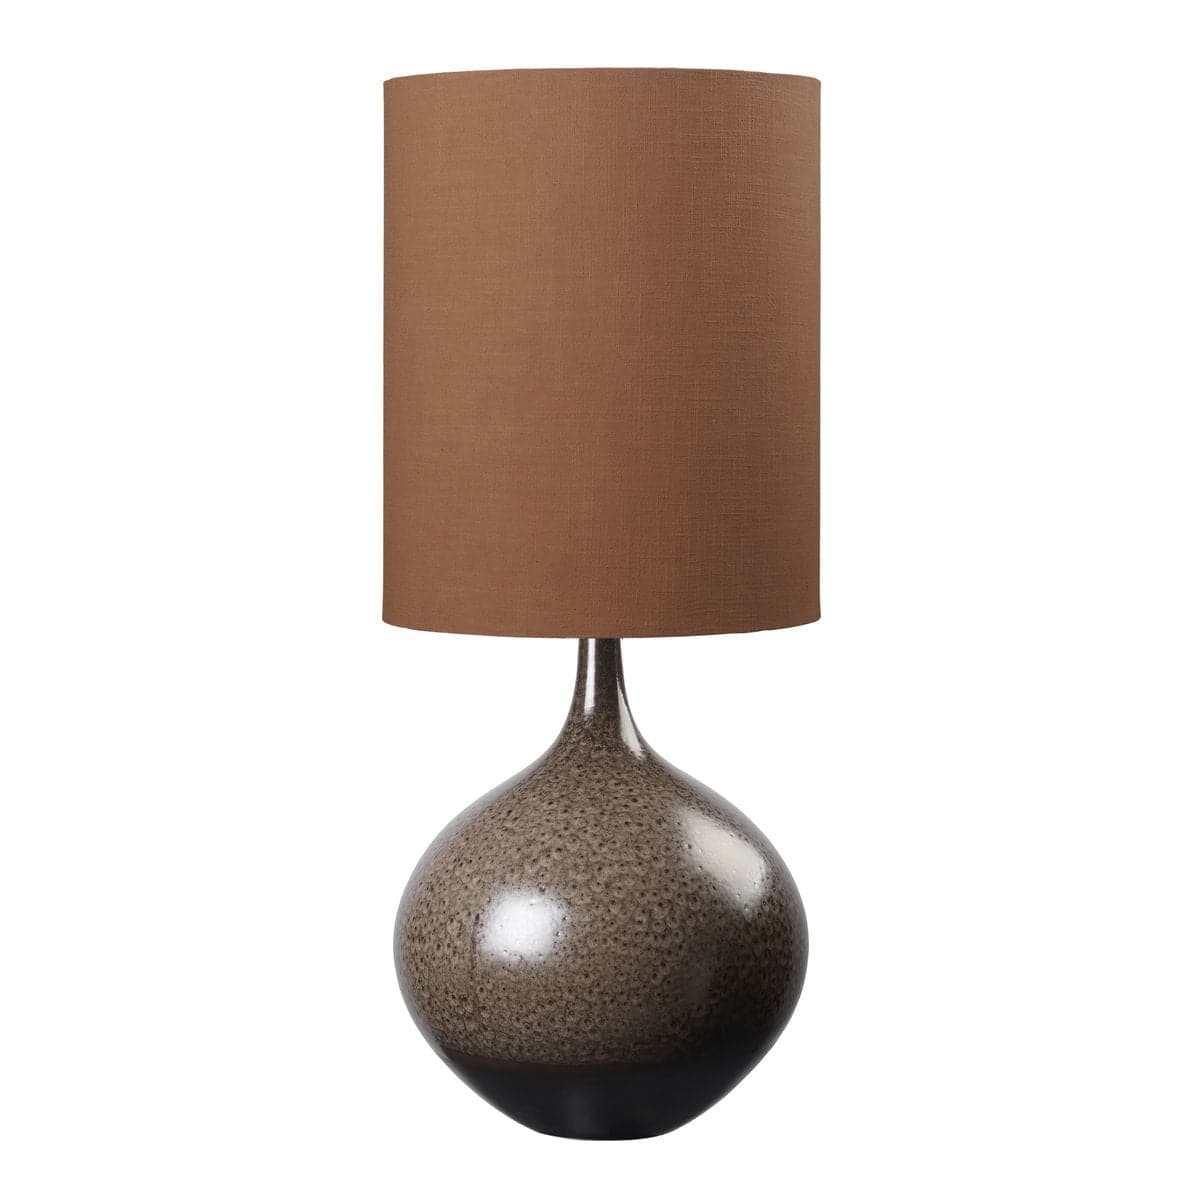 Billede af Bella keramisk Lampe med lampeskærm - CHESTNUT m. BURNT ORANGE skærm, Cozy Living